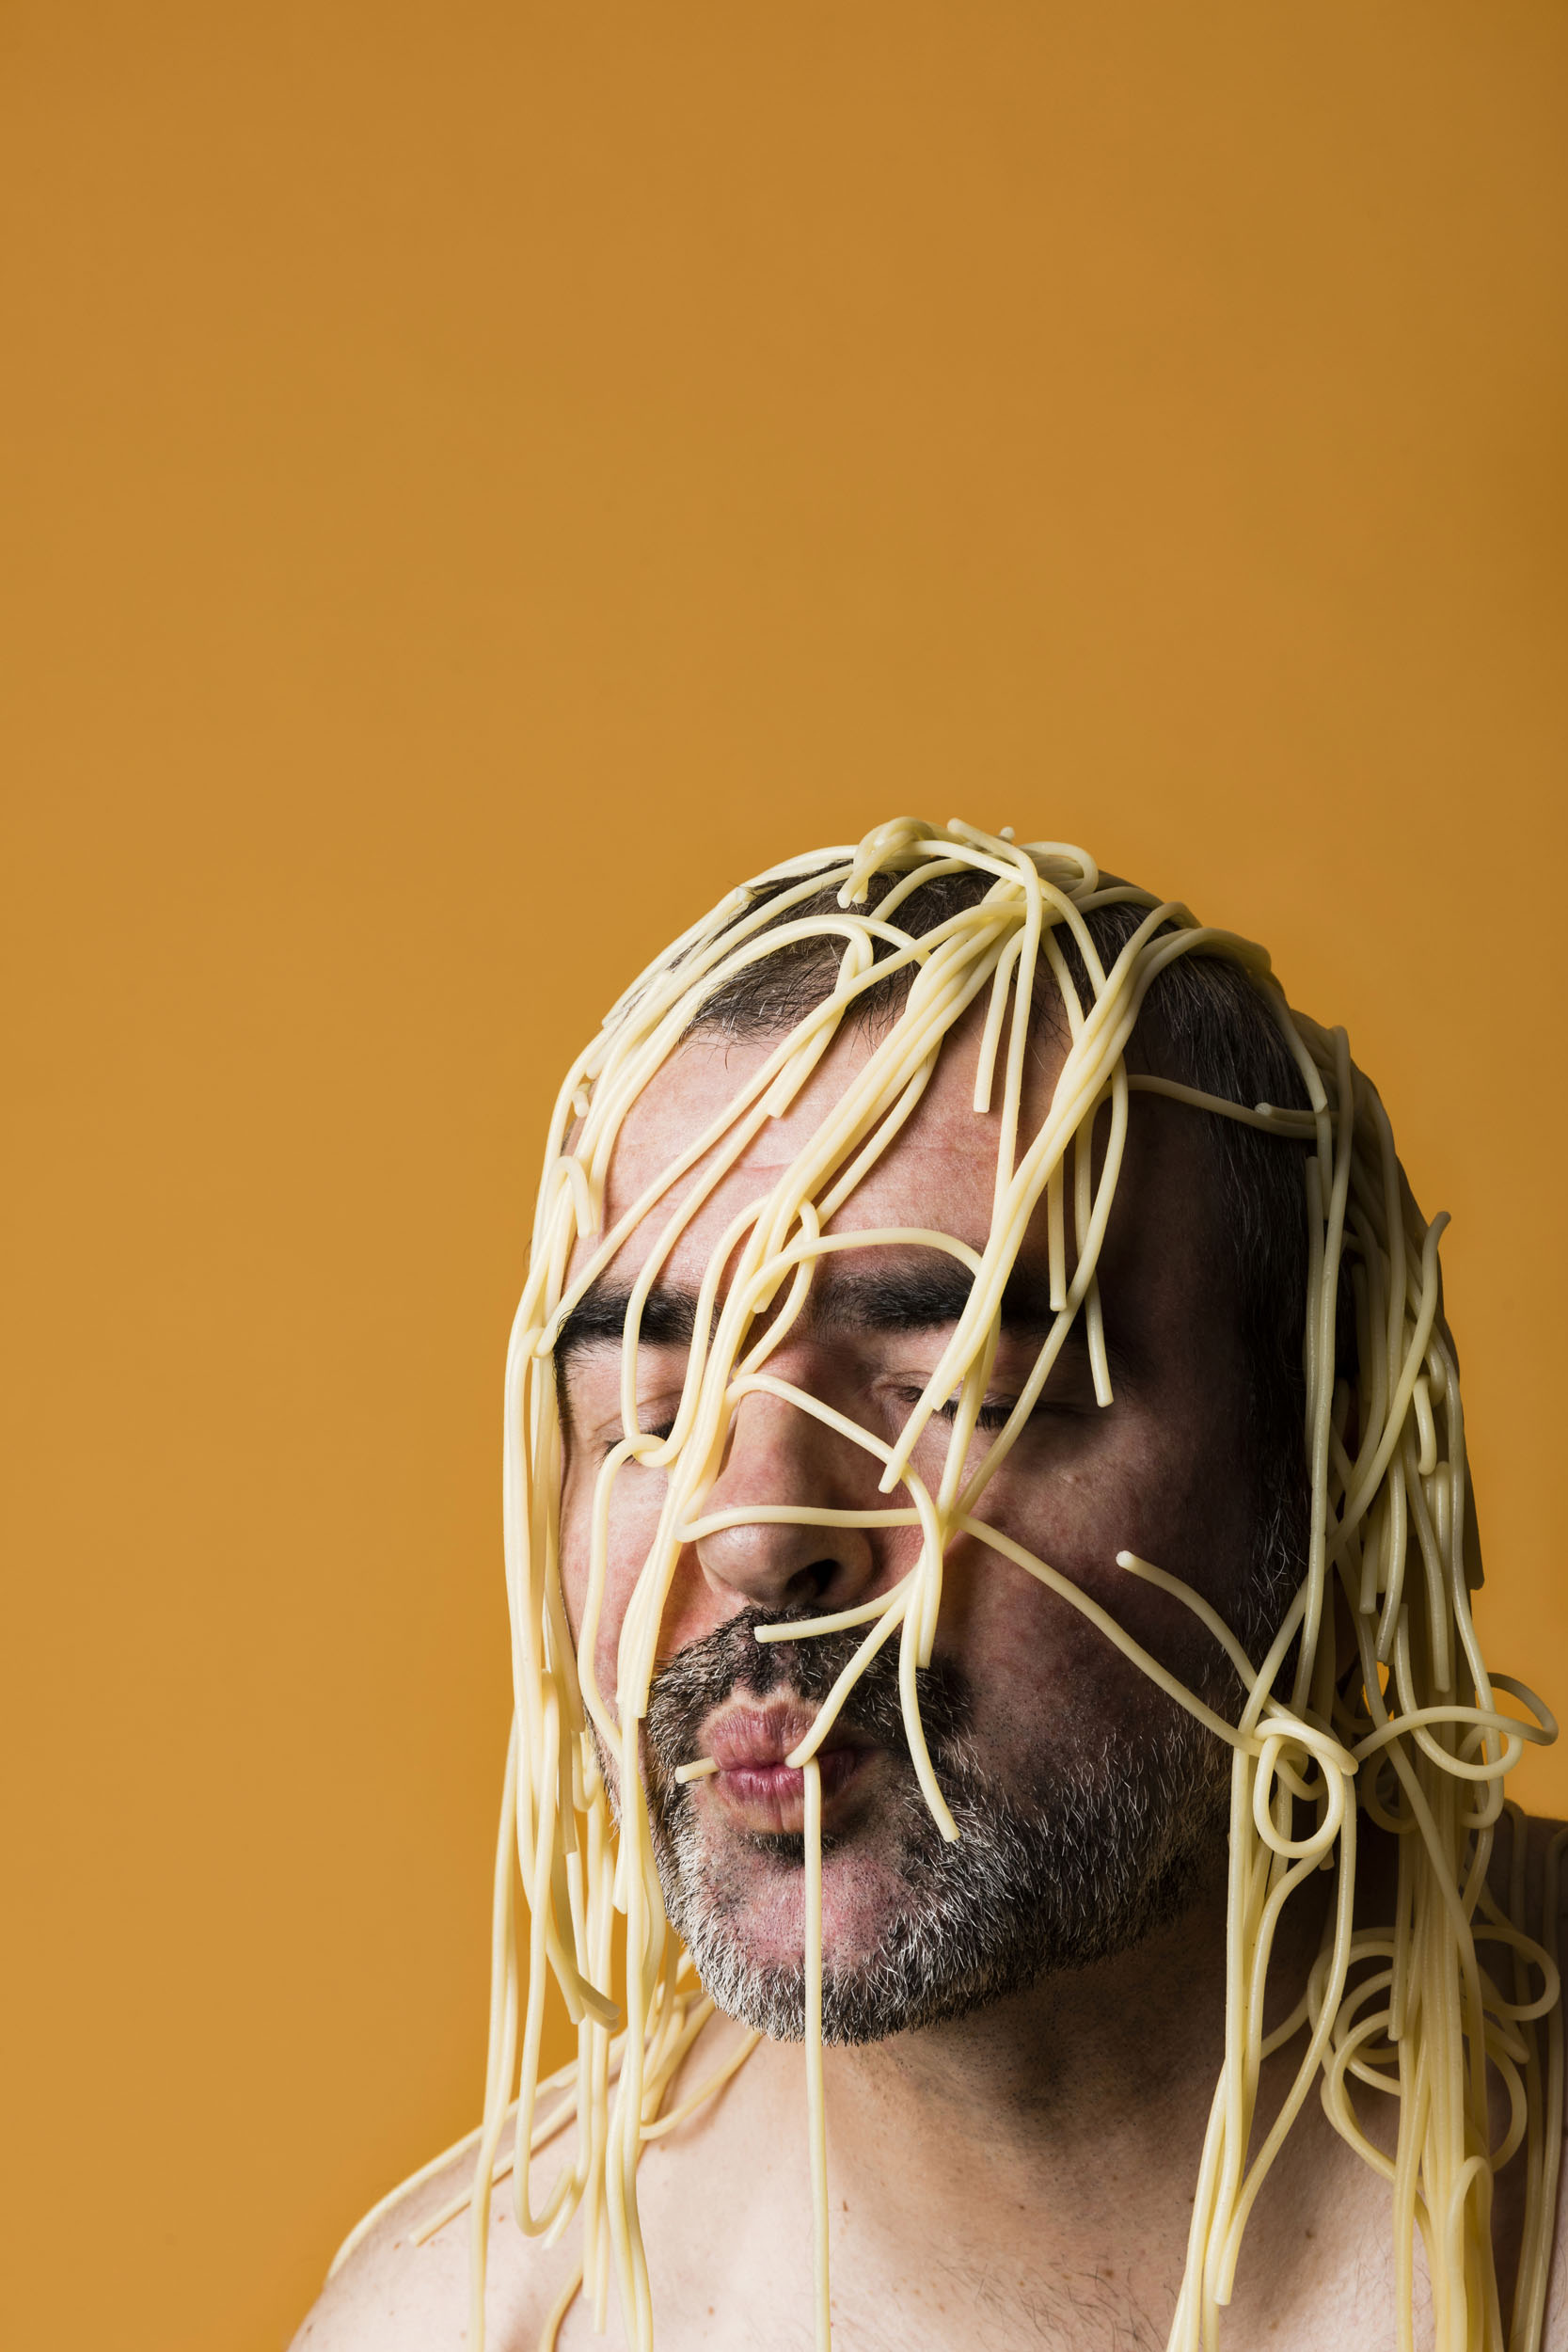 Portrait artistique d'un homme torse nu avec des spaghettis cuits sur la tête. Photo de portrait réalisée en studio pour la banque d'images  Plainpicture.